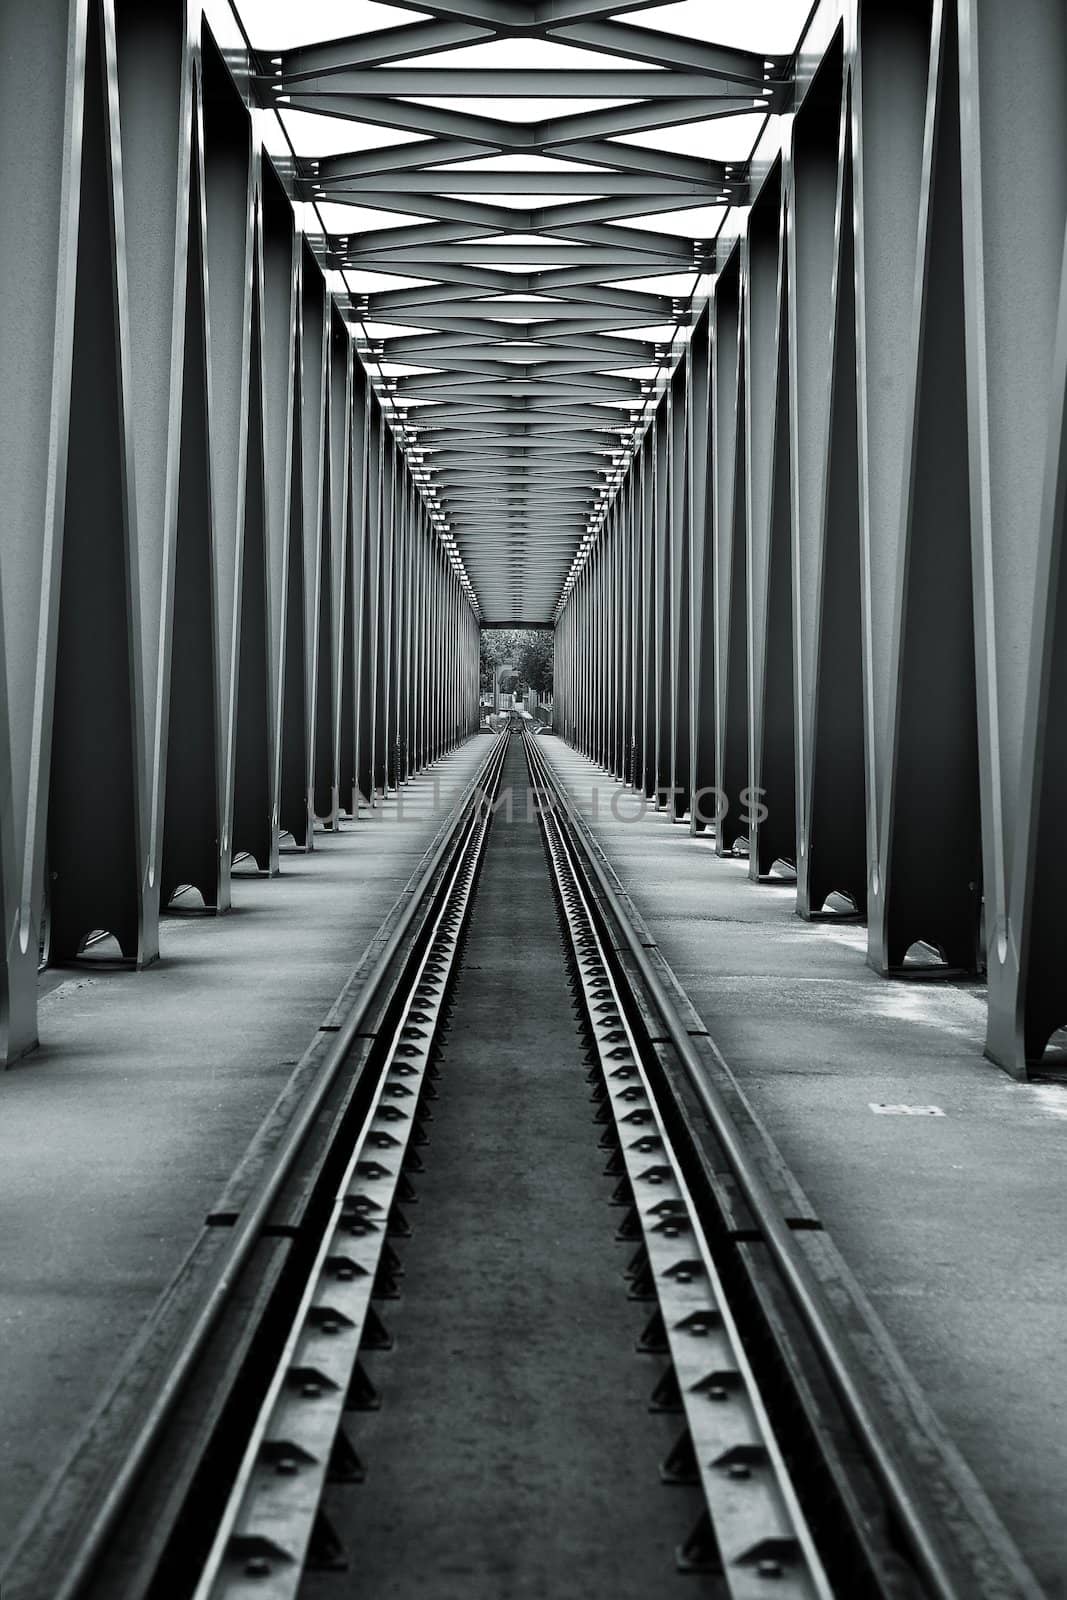 Railroad Bridge by Gudella